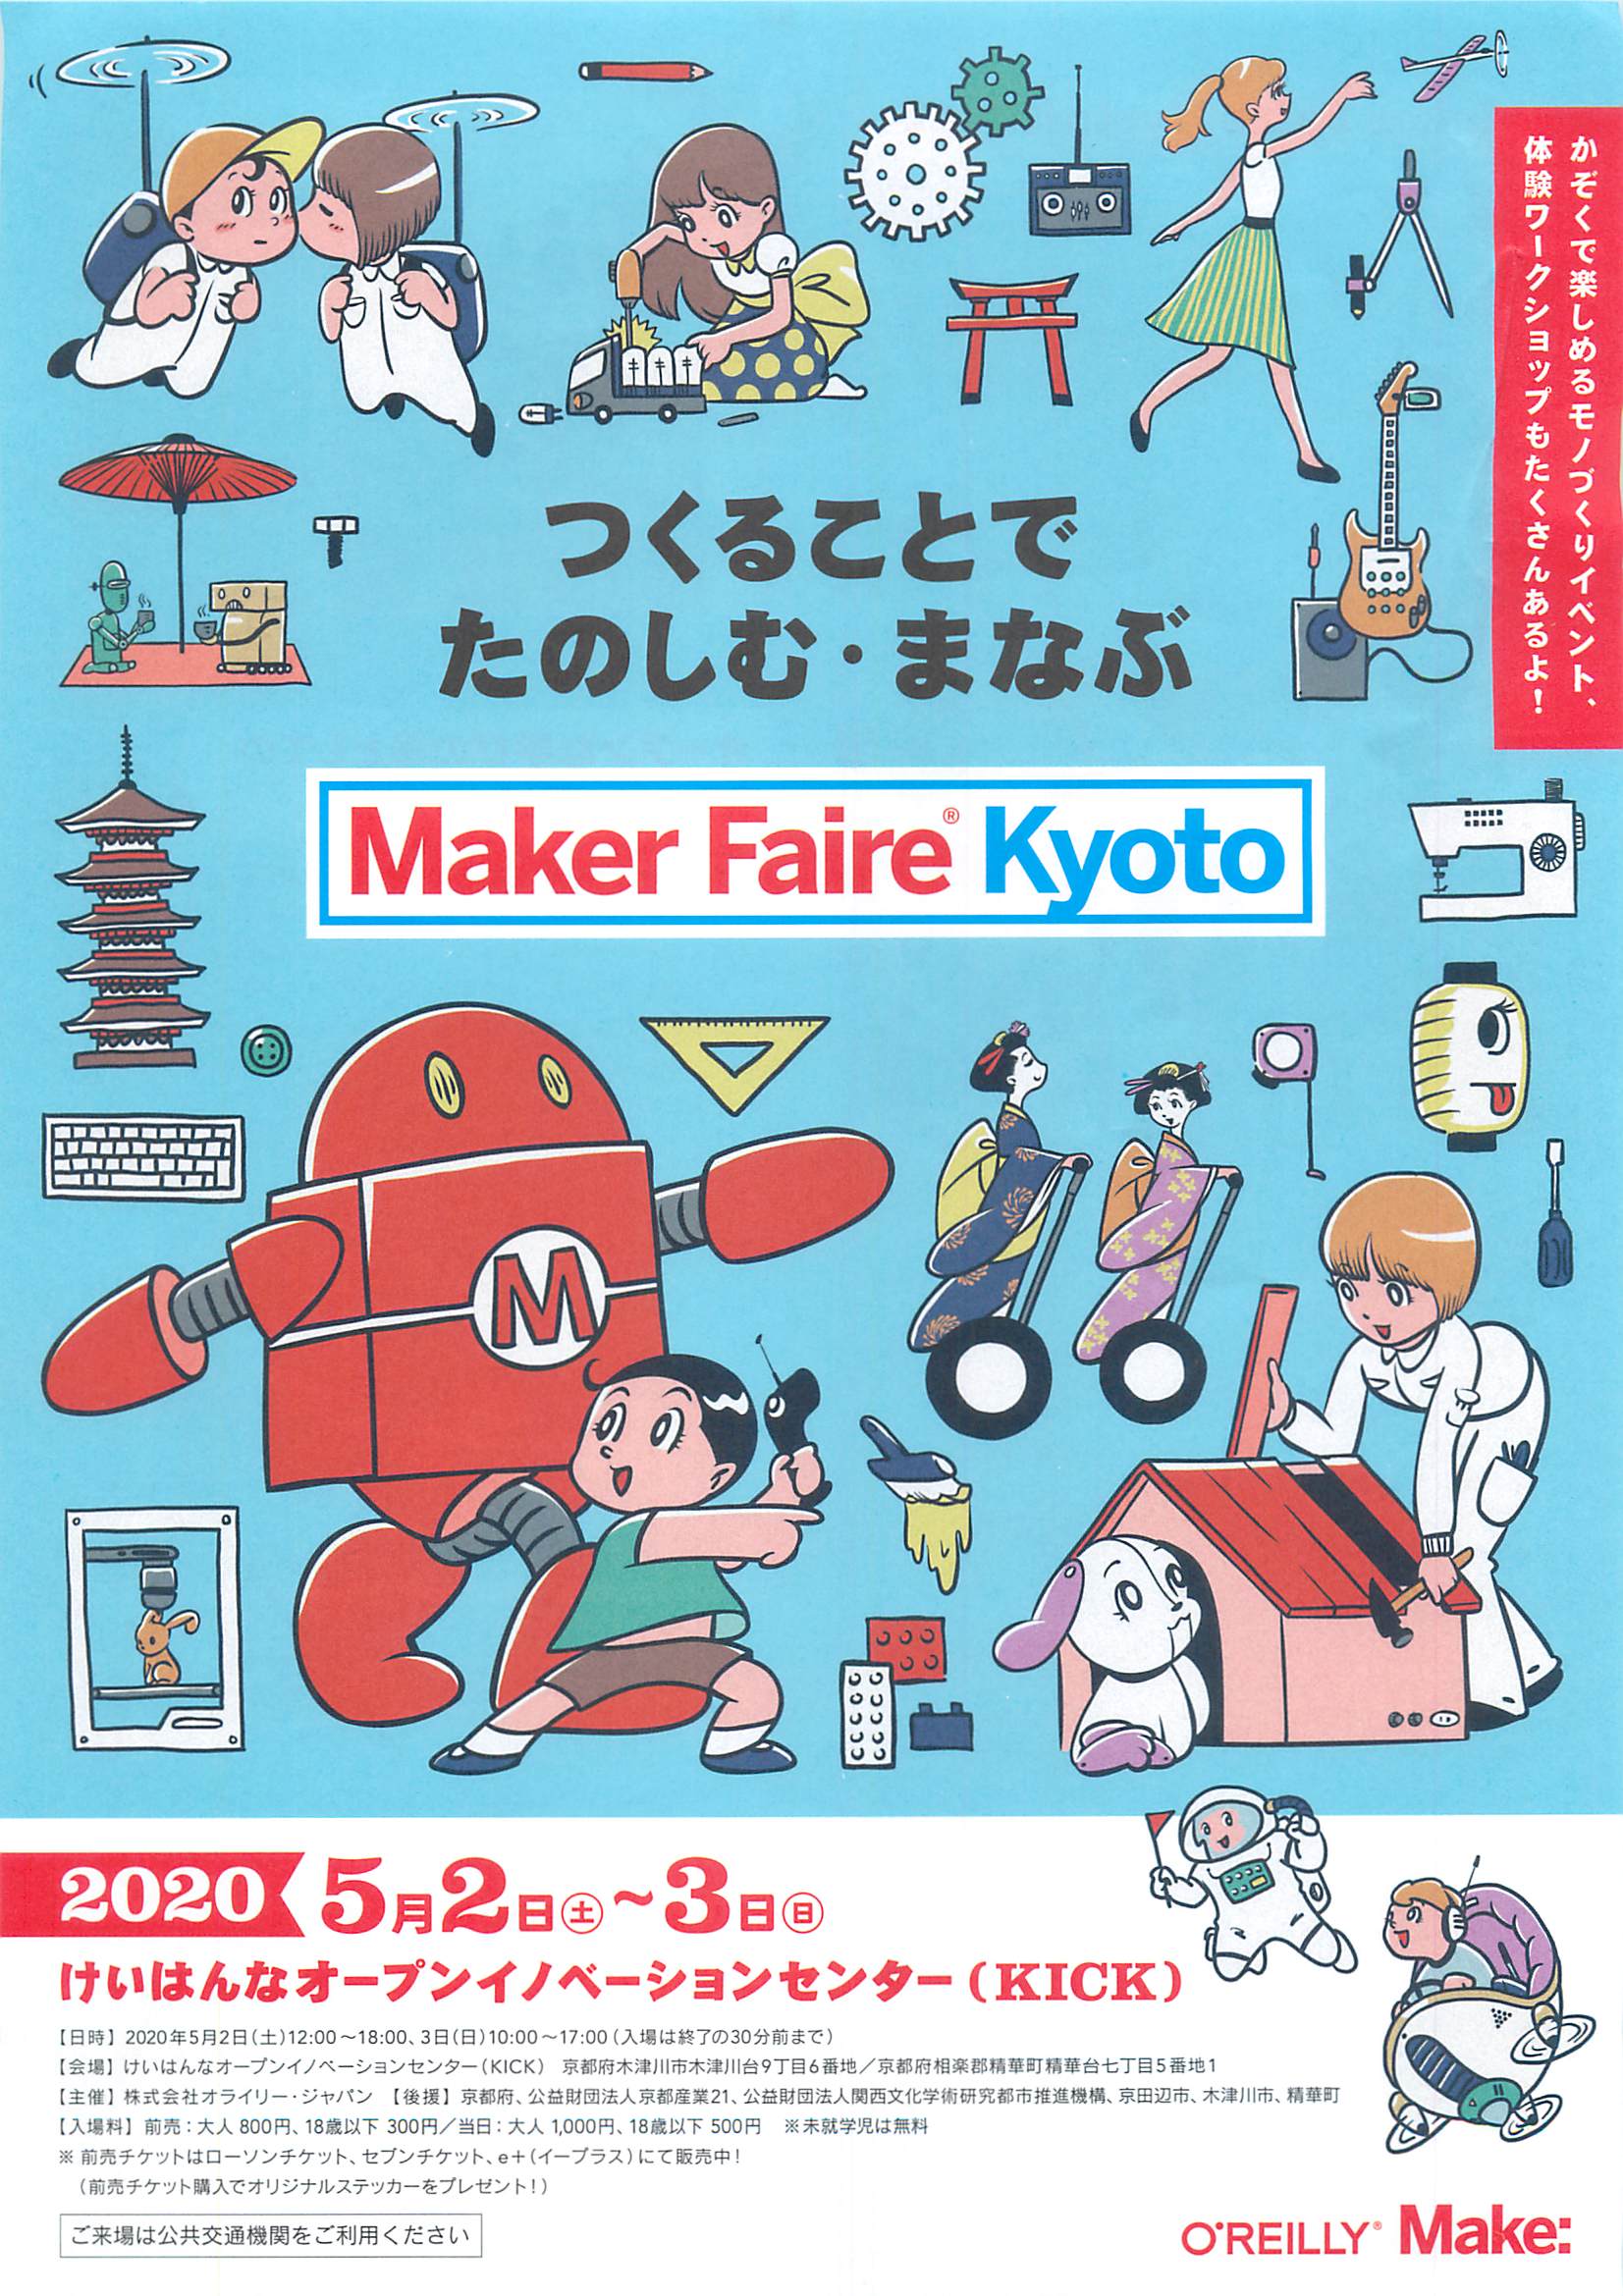 【悲報】Maker Faire Kyoto 2020 開催中止